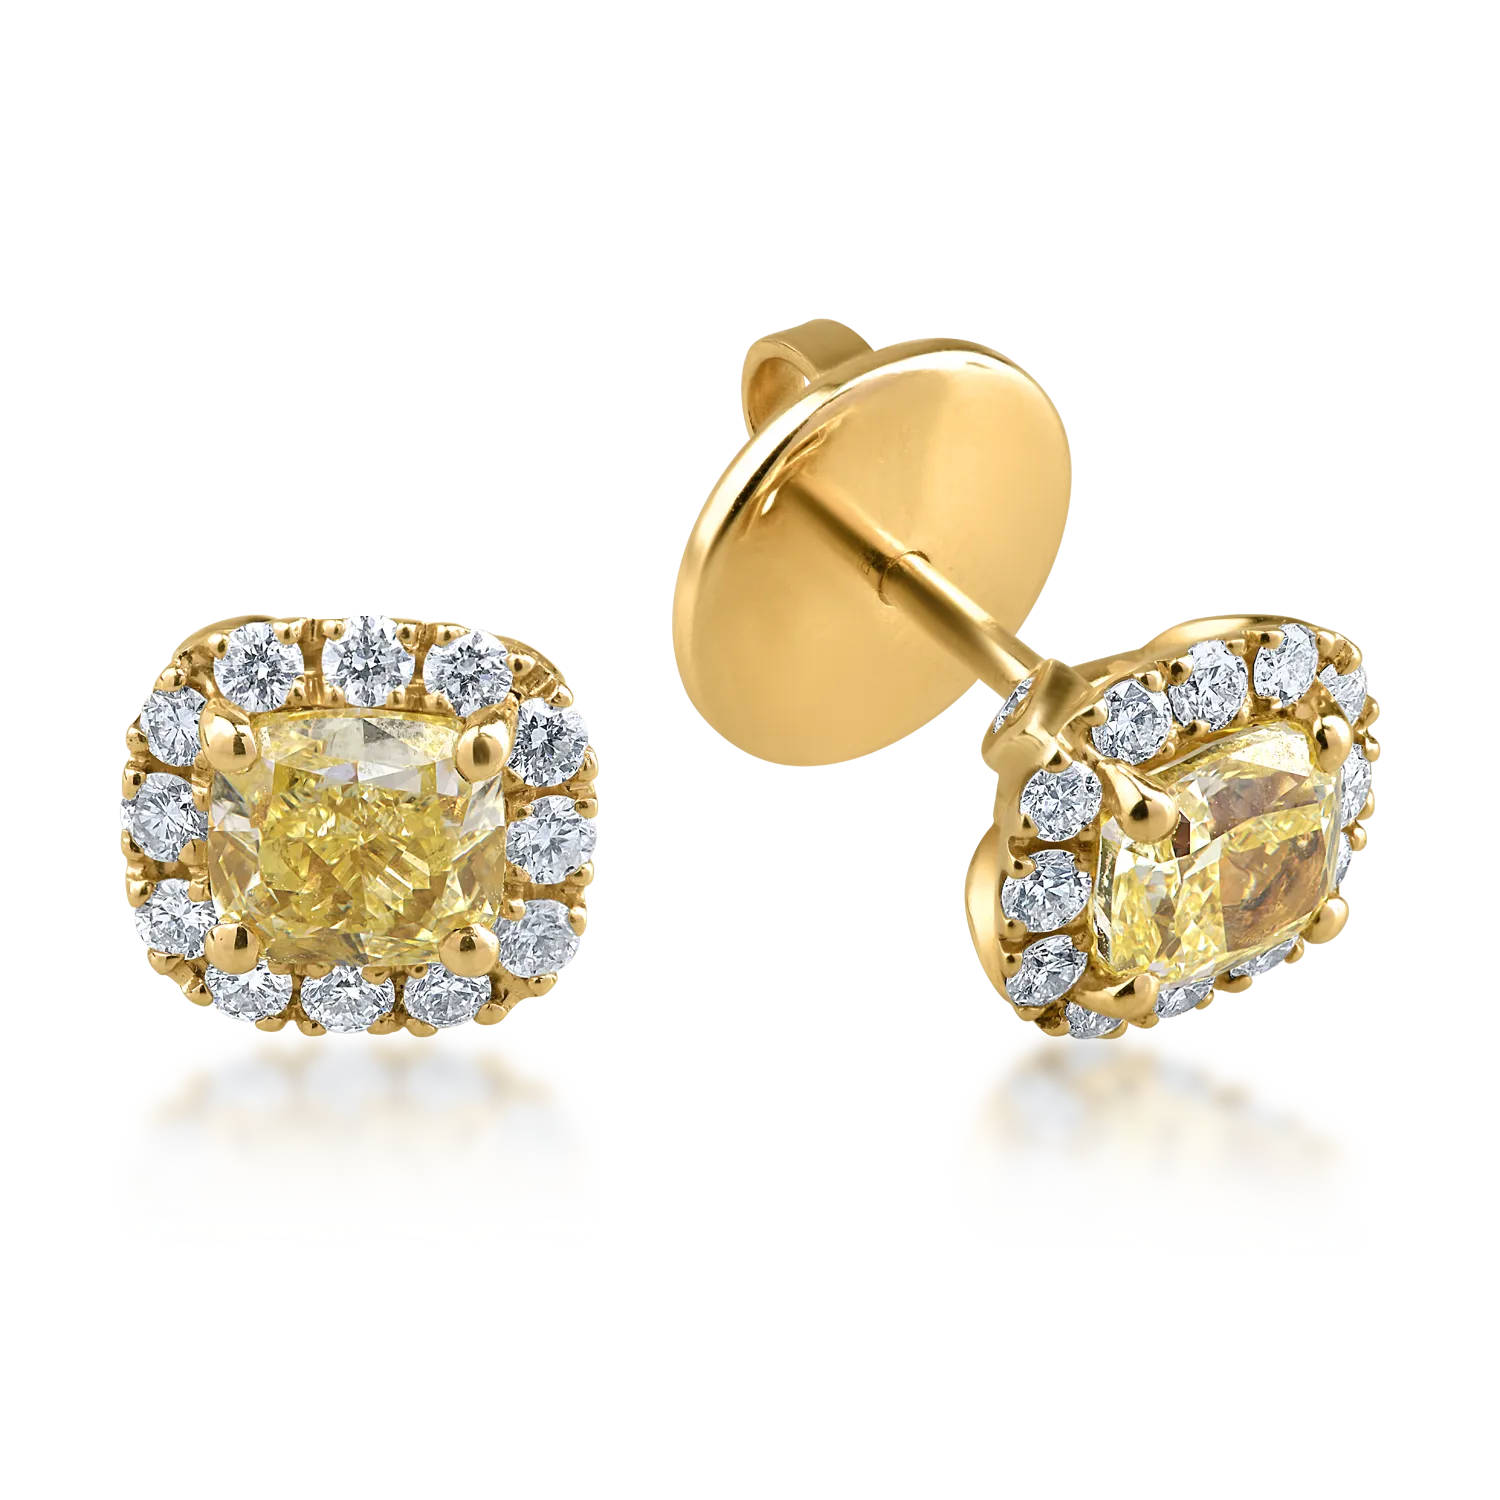 Cercei din aur galben cu diamante fancy galbene de 1.22ct si diamante transparente de 0.38ct